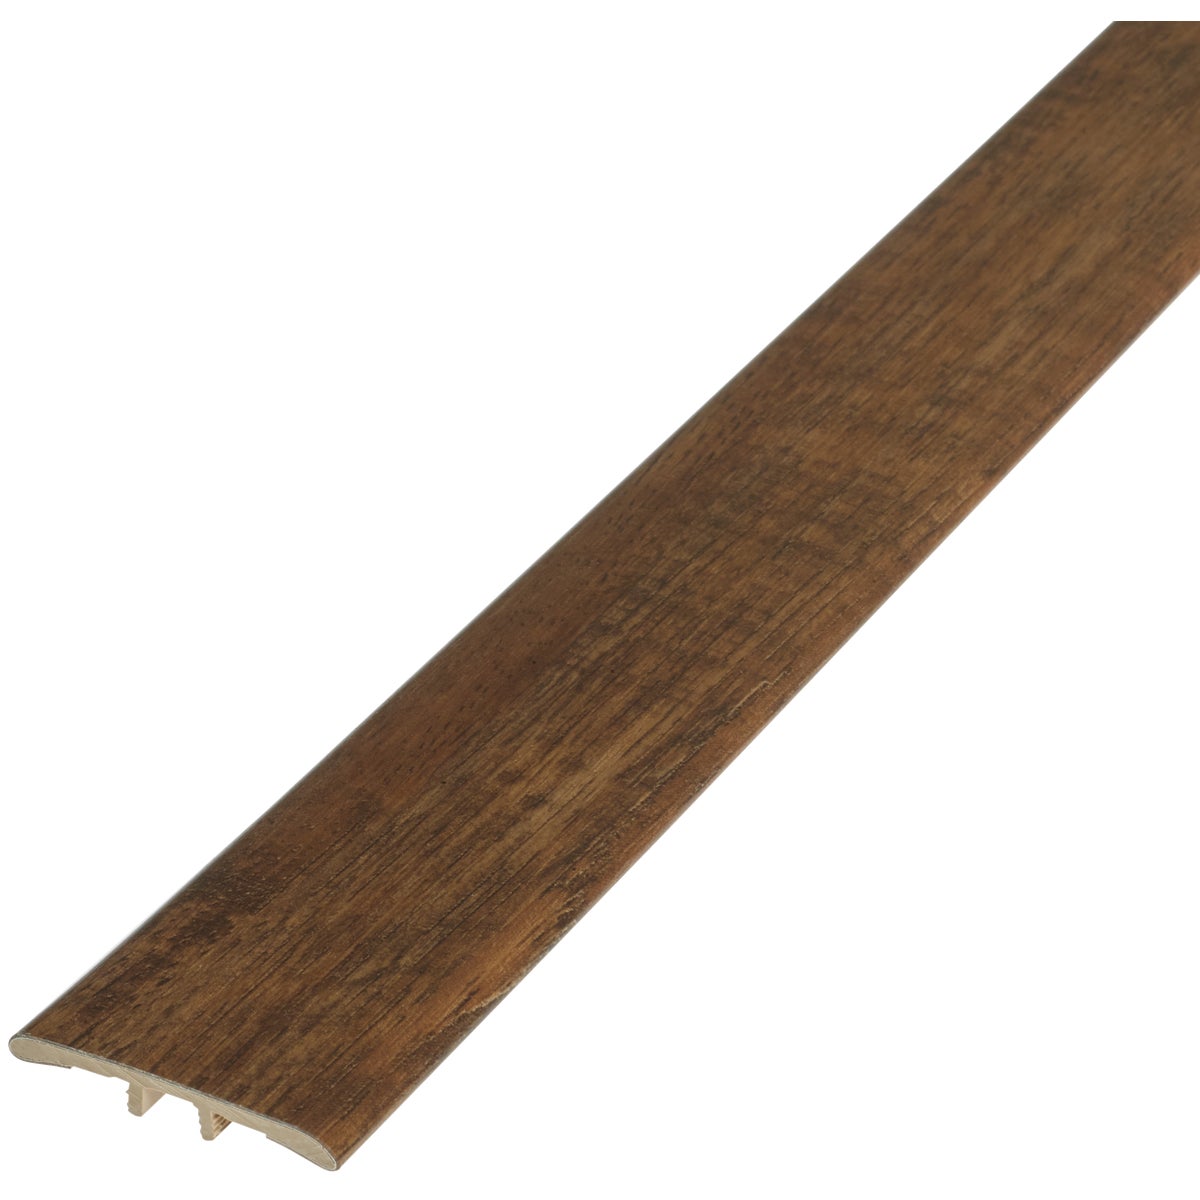 Shaw Blue Ridge Pine Earthy Pine 1-3/4 In. W x 94 In. L T Mold Vinyl Floor Plank Trim